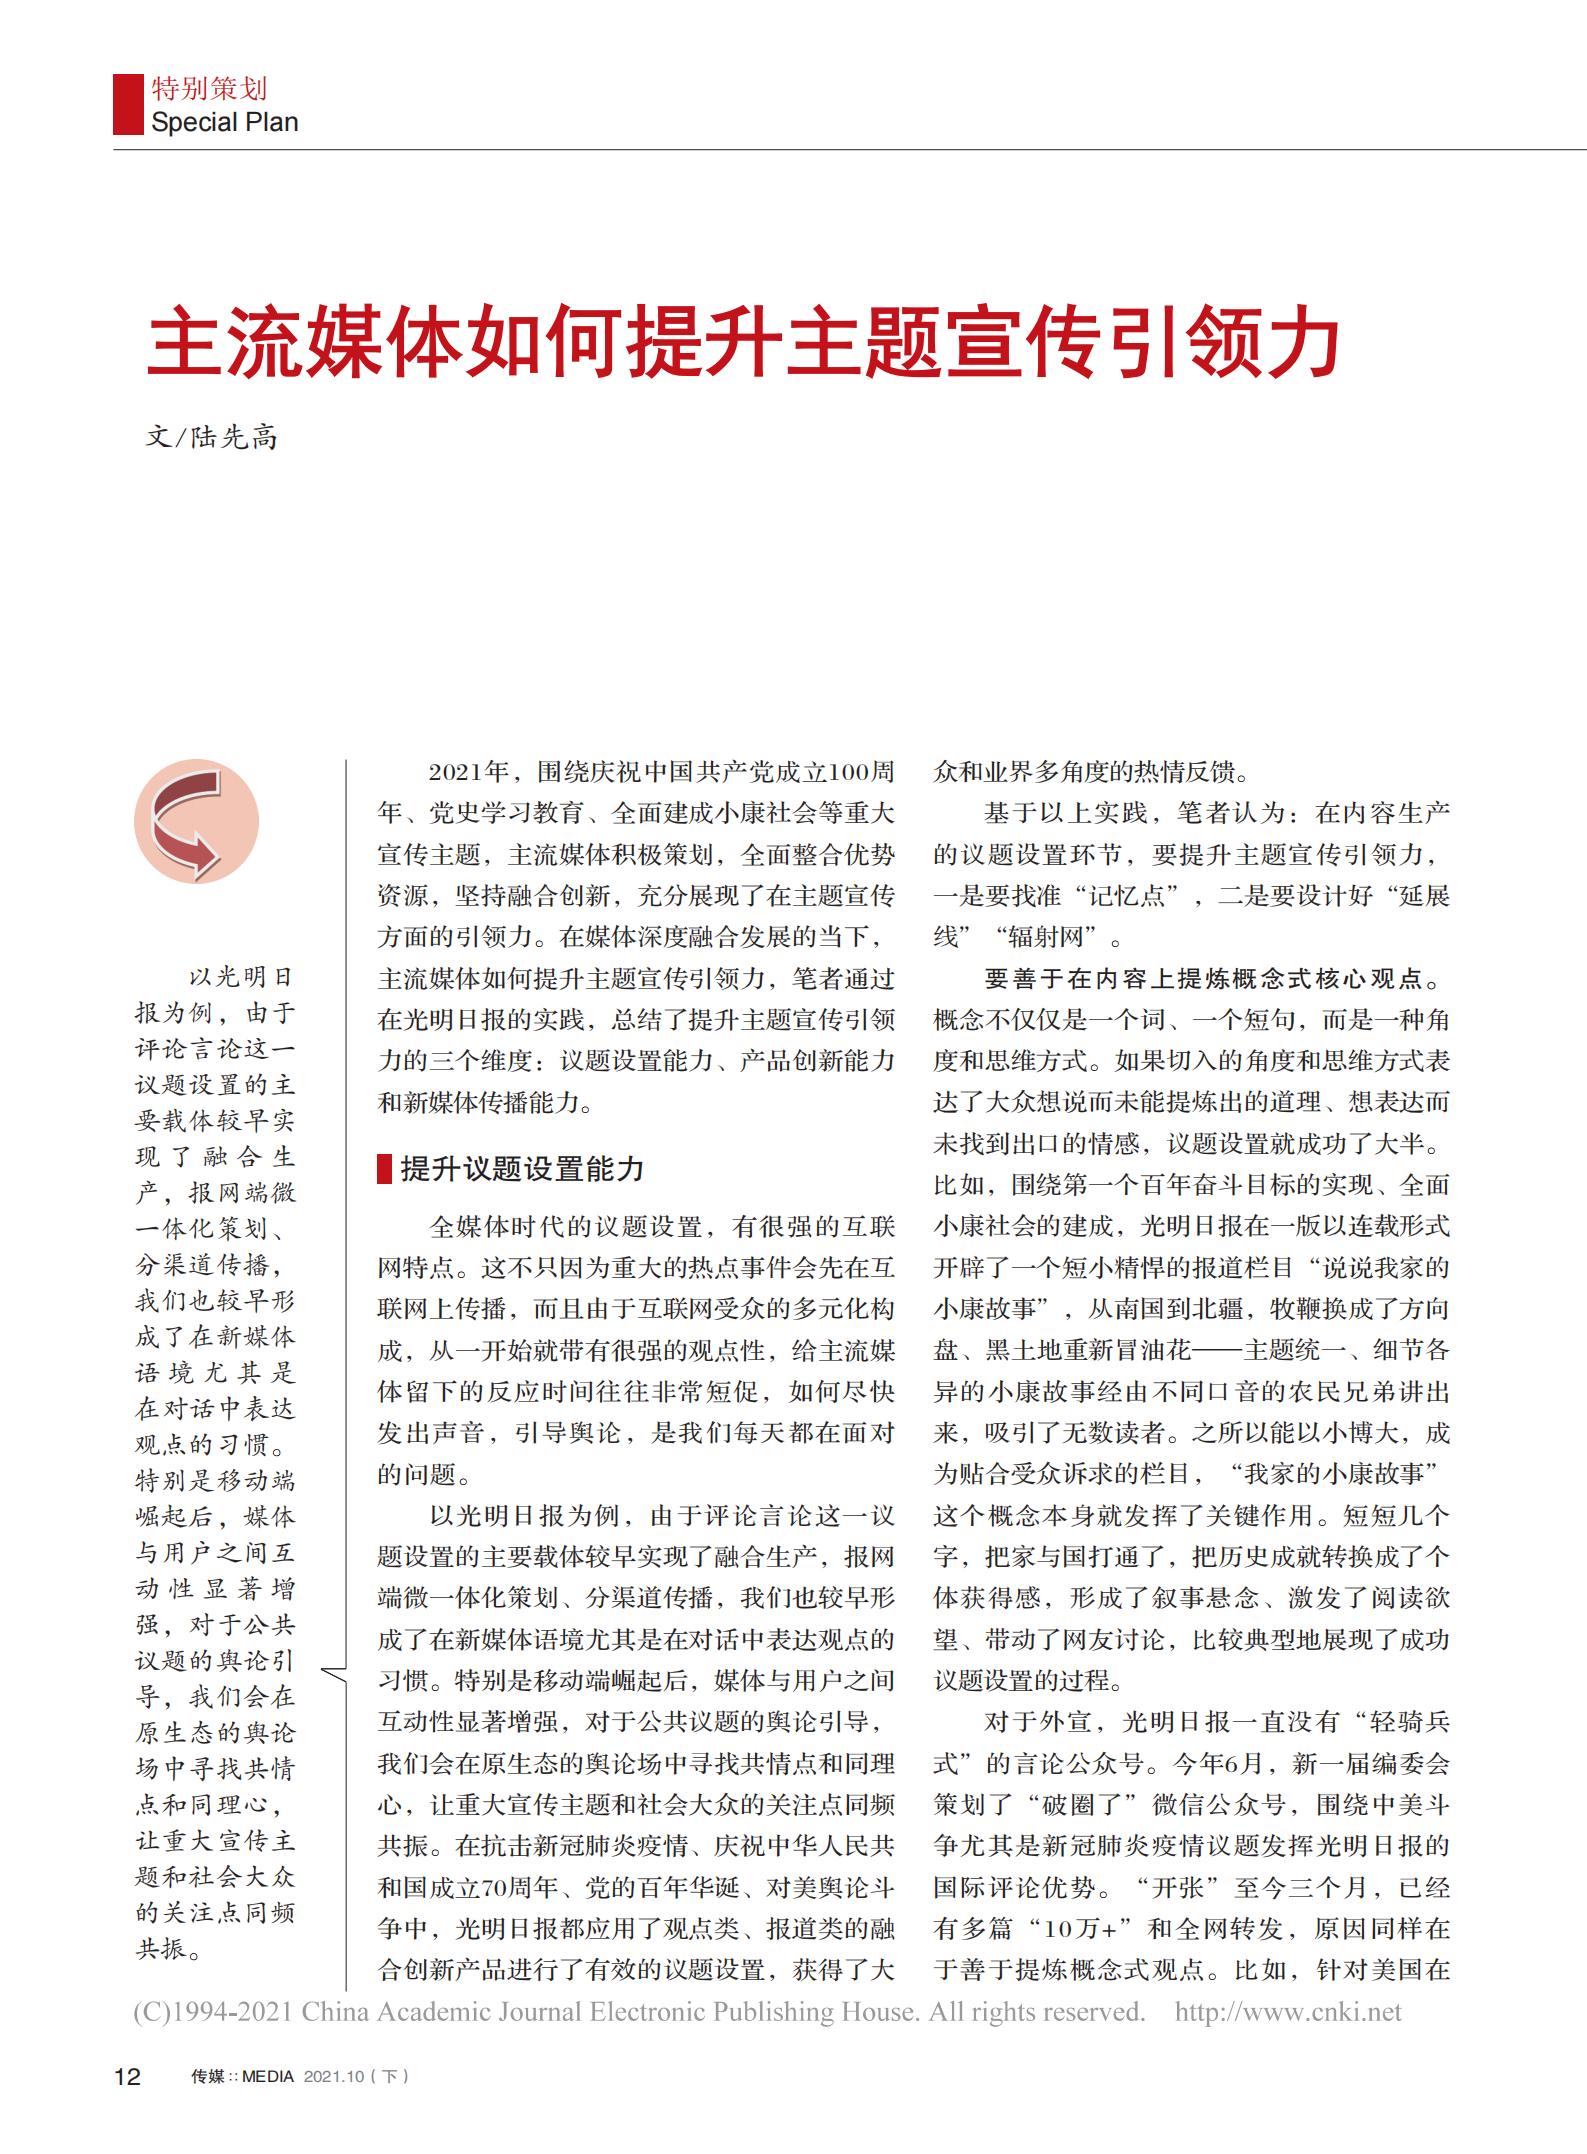 光明日报参评第三十二届中国新闻奖新闻论文作品《主流媒体如何提升主题宣传引导力》公示